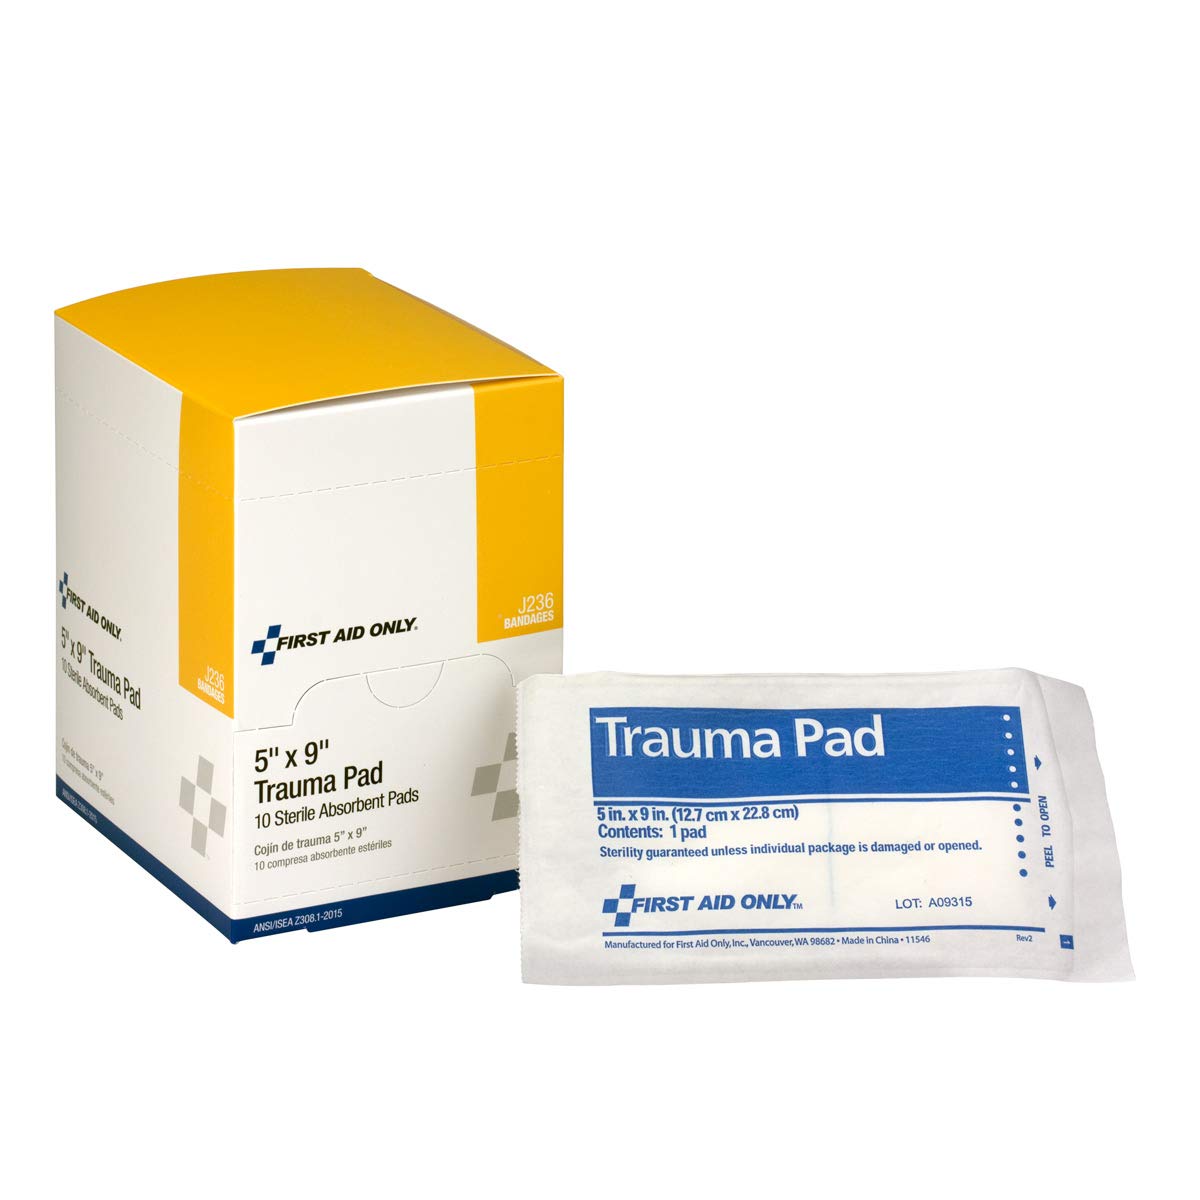 First Aid Only - LYSB00I02OMJU-SPRTSEQIP Trauma Pad, 5 Inch X 9 Inch, 10 Count Box